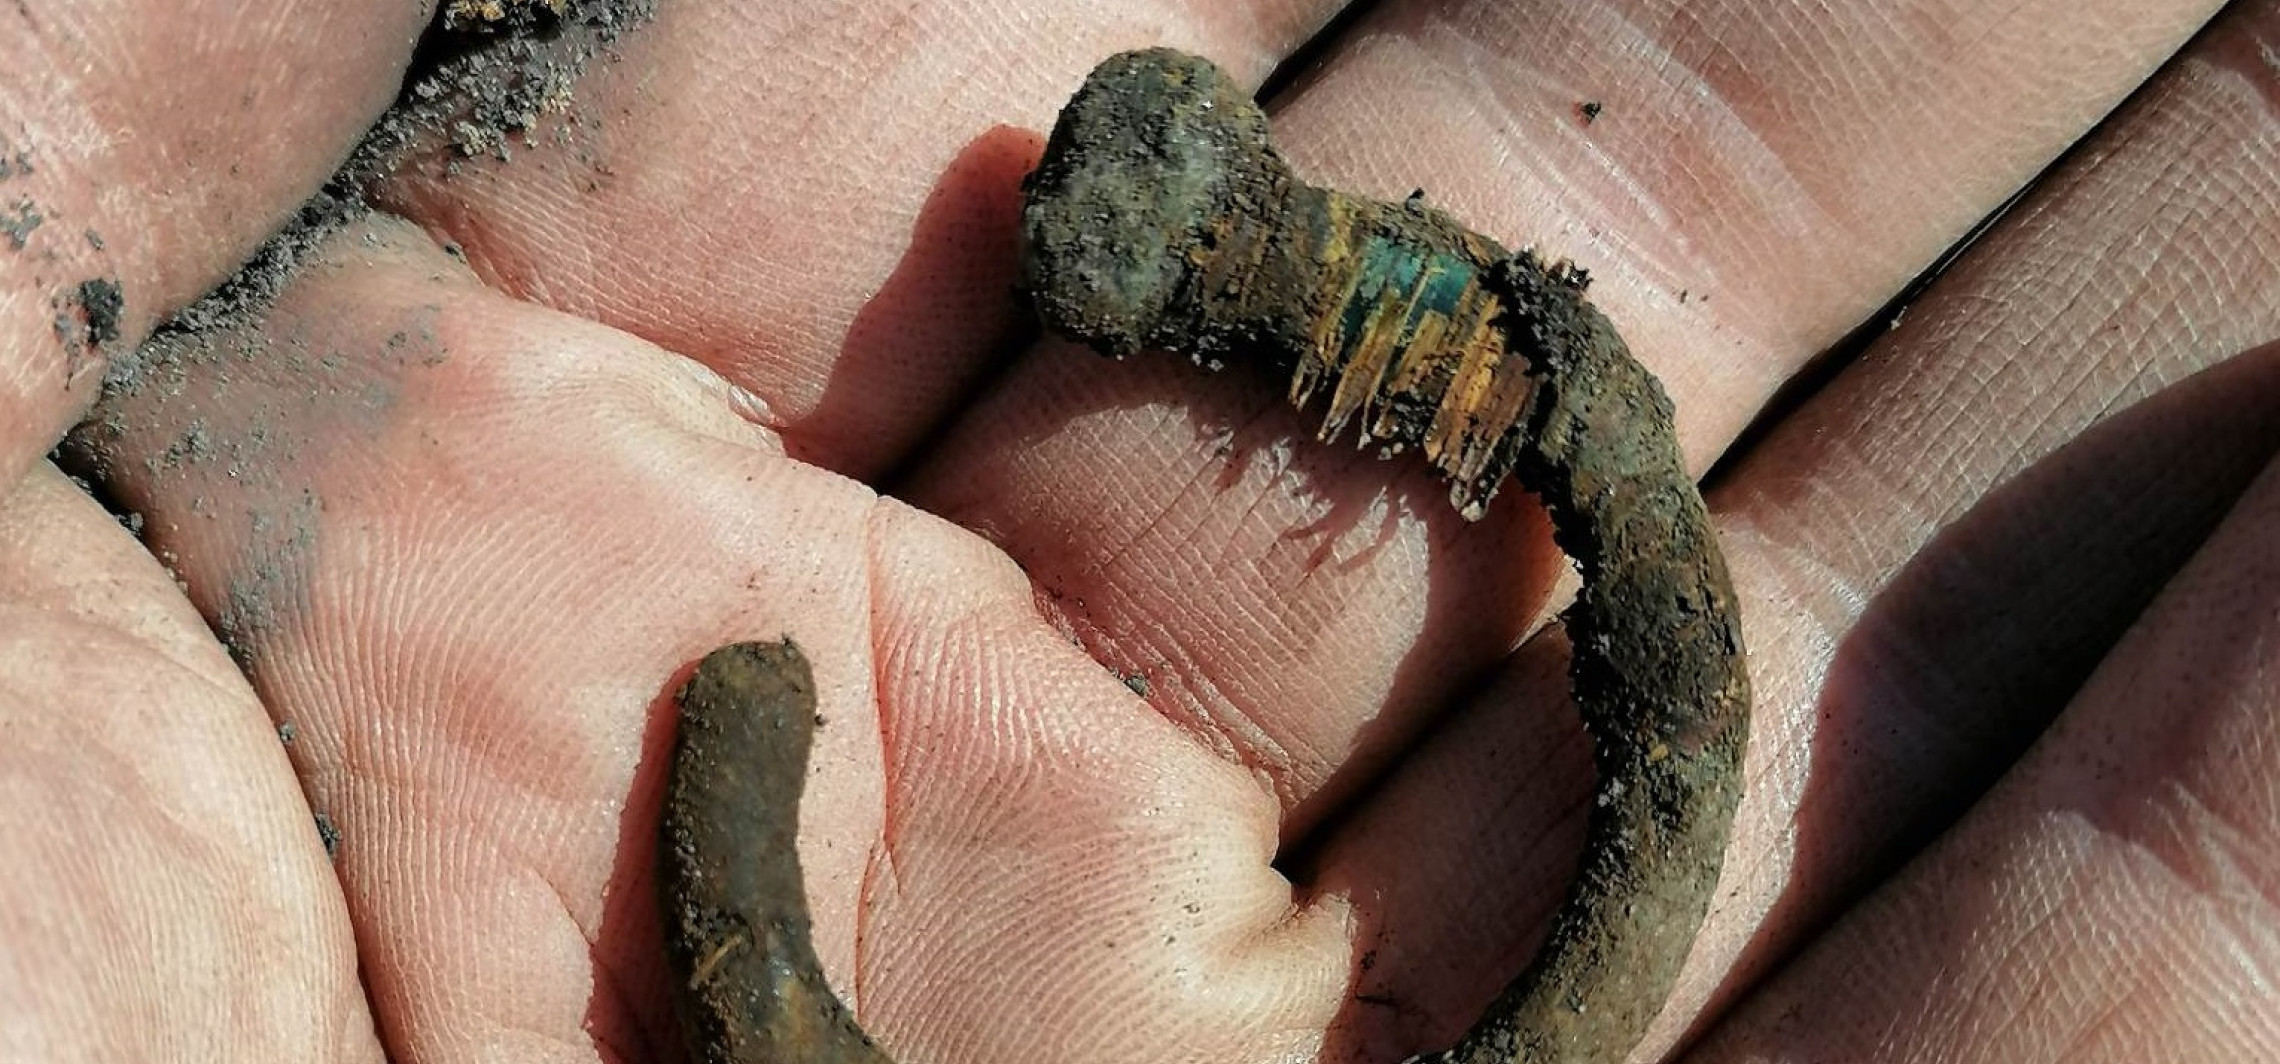 Inowrocław - Archeolodzy wykopali biżuterię sprzed setek lat